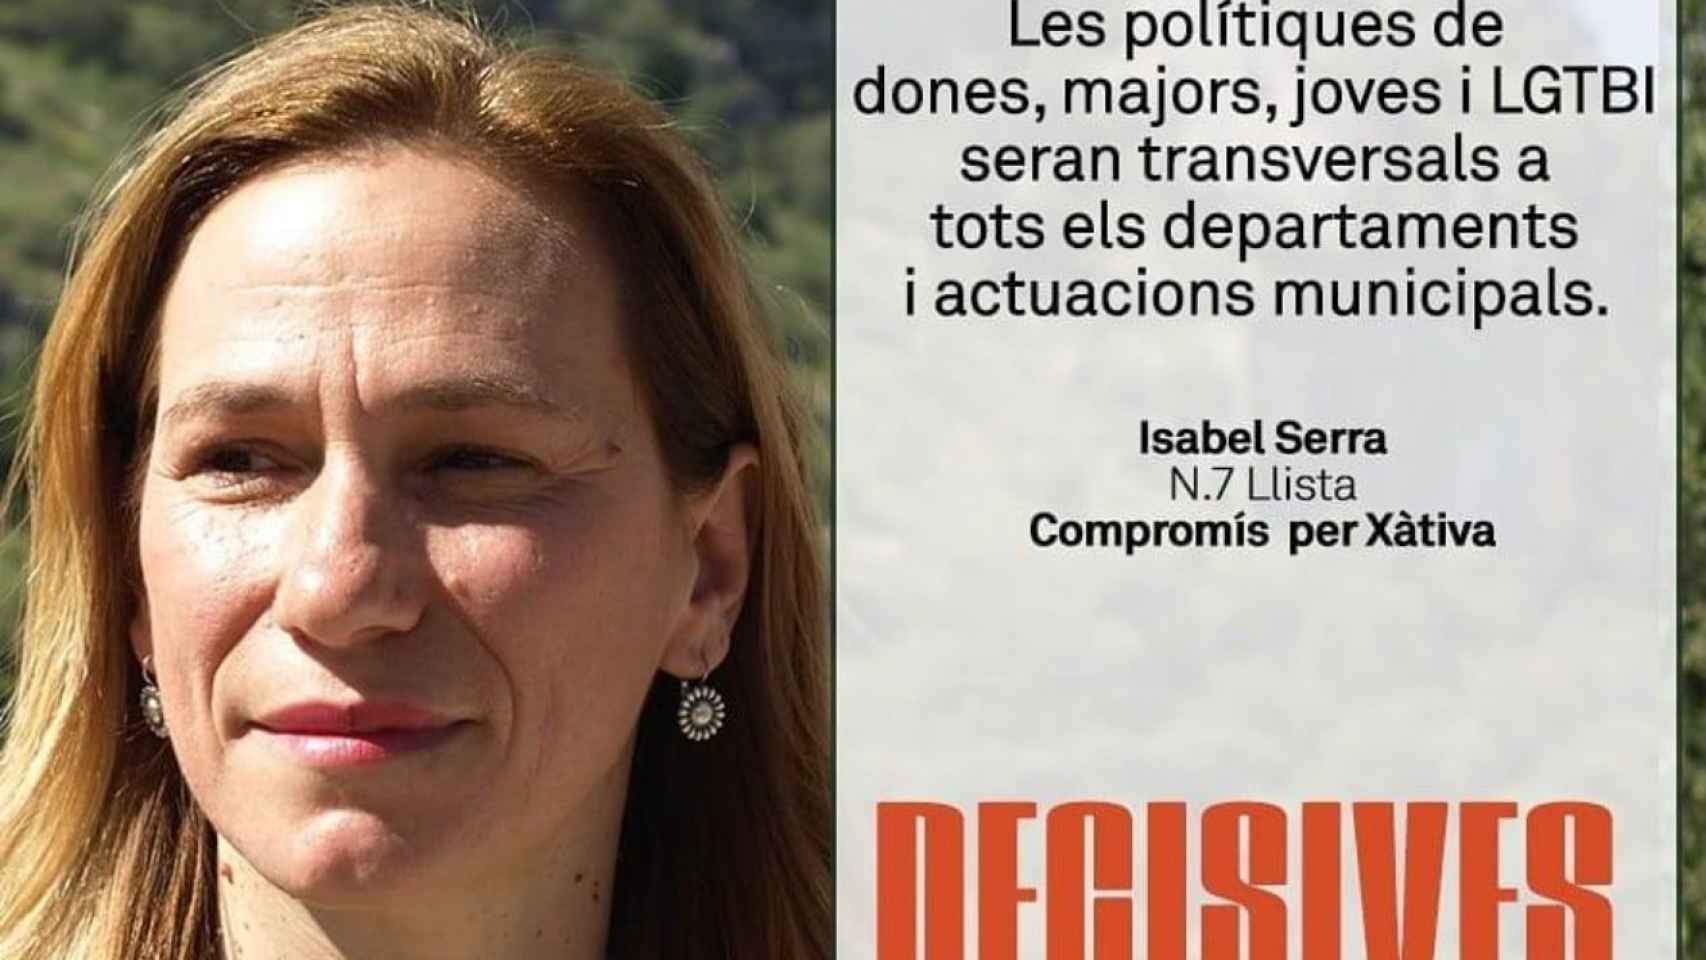 Imagen de campaña de Isabel Serra, candidata número 7 de Compromís en Xàtiva en 2019.